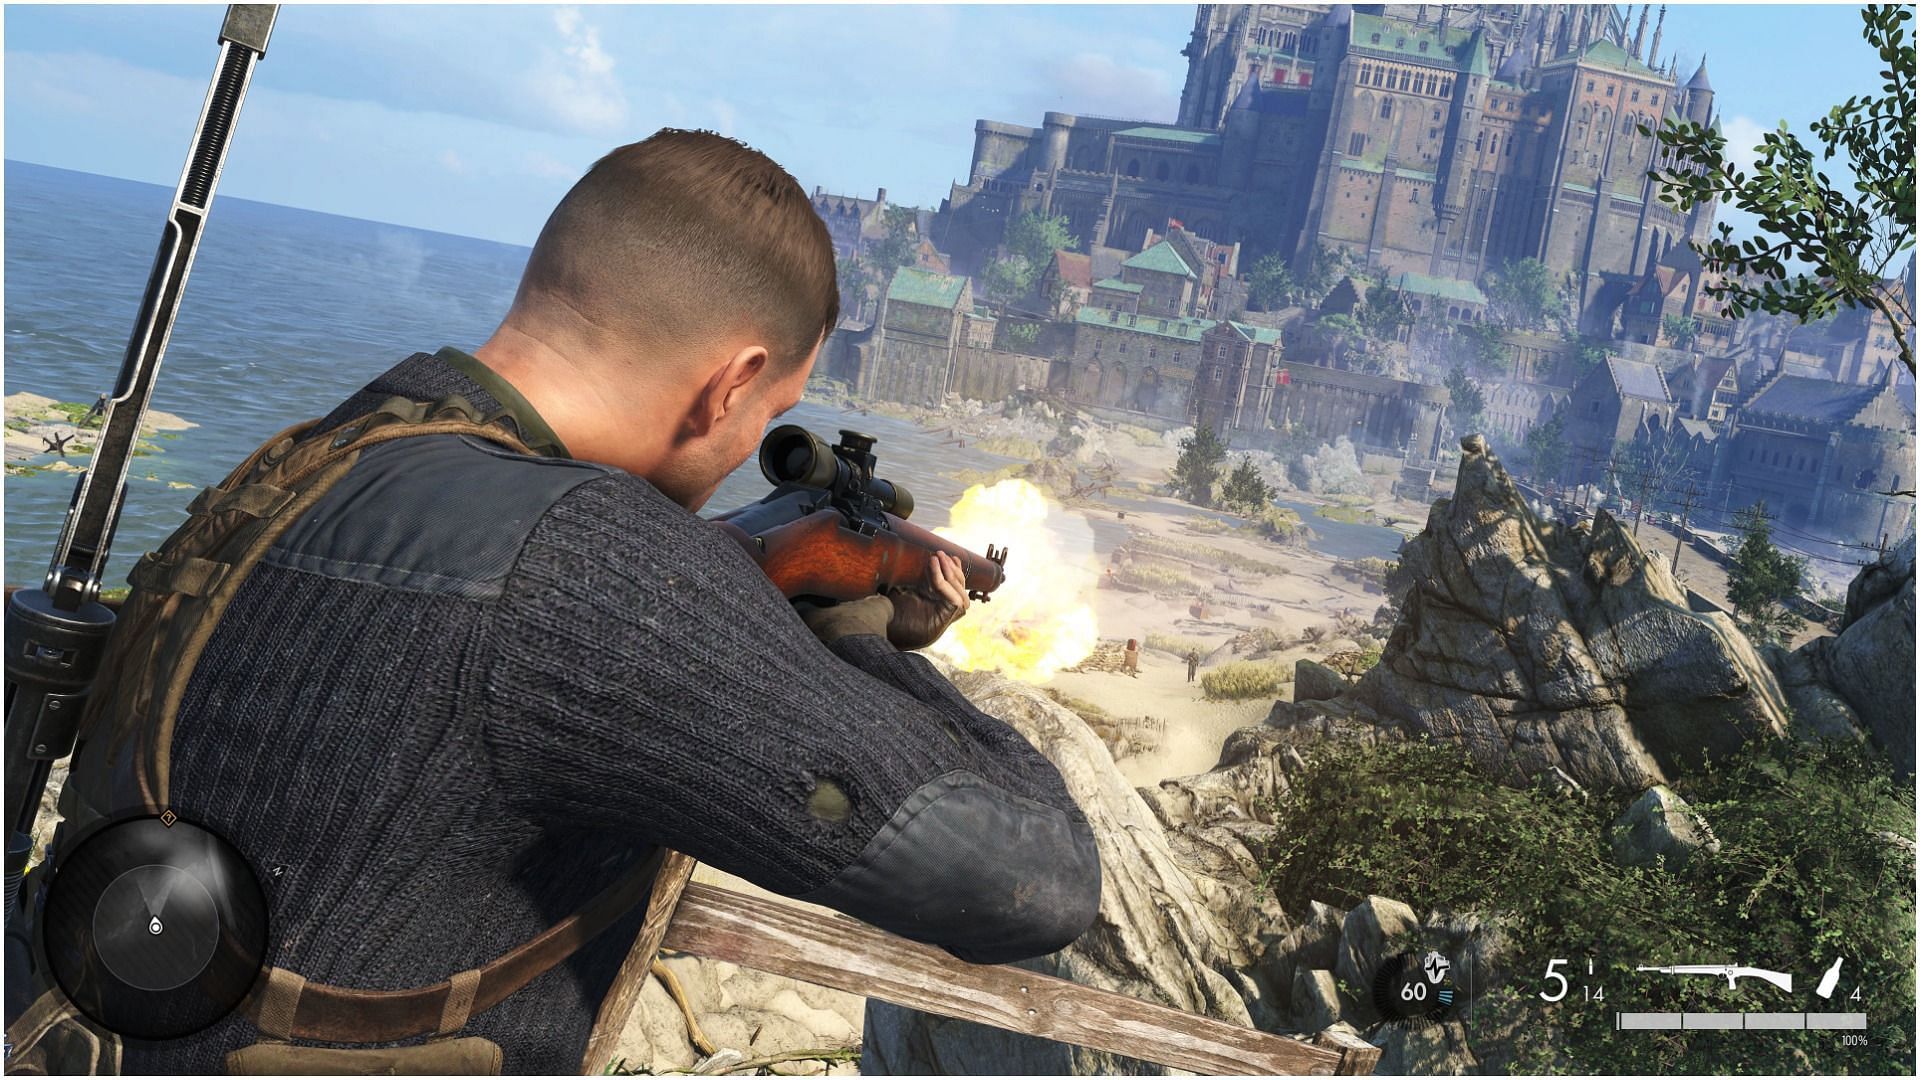 Karl taking the shot in Sniper Elite 5 (Image via Rebellion Developments)